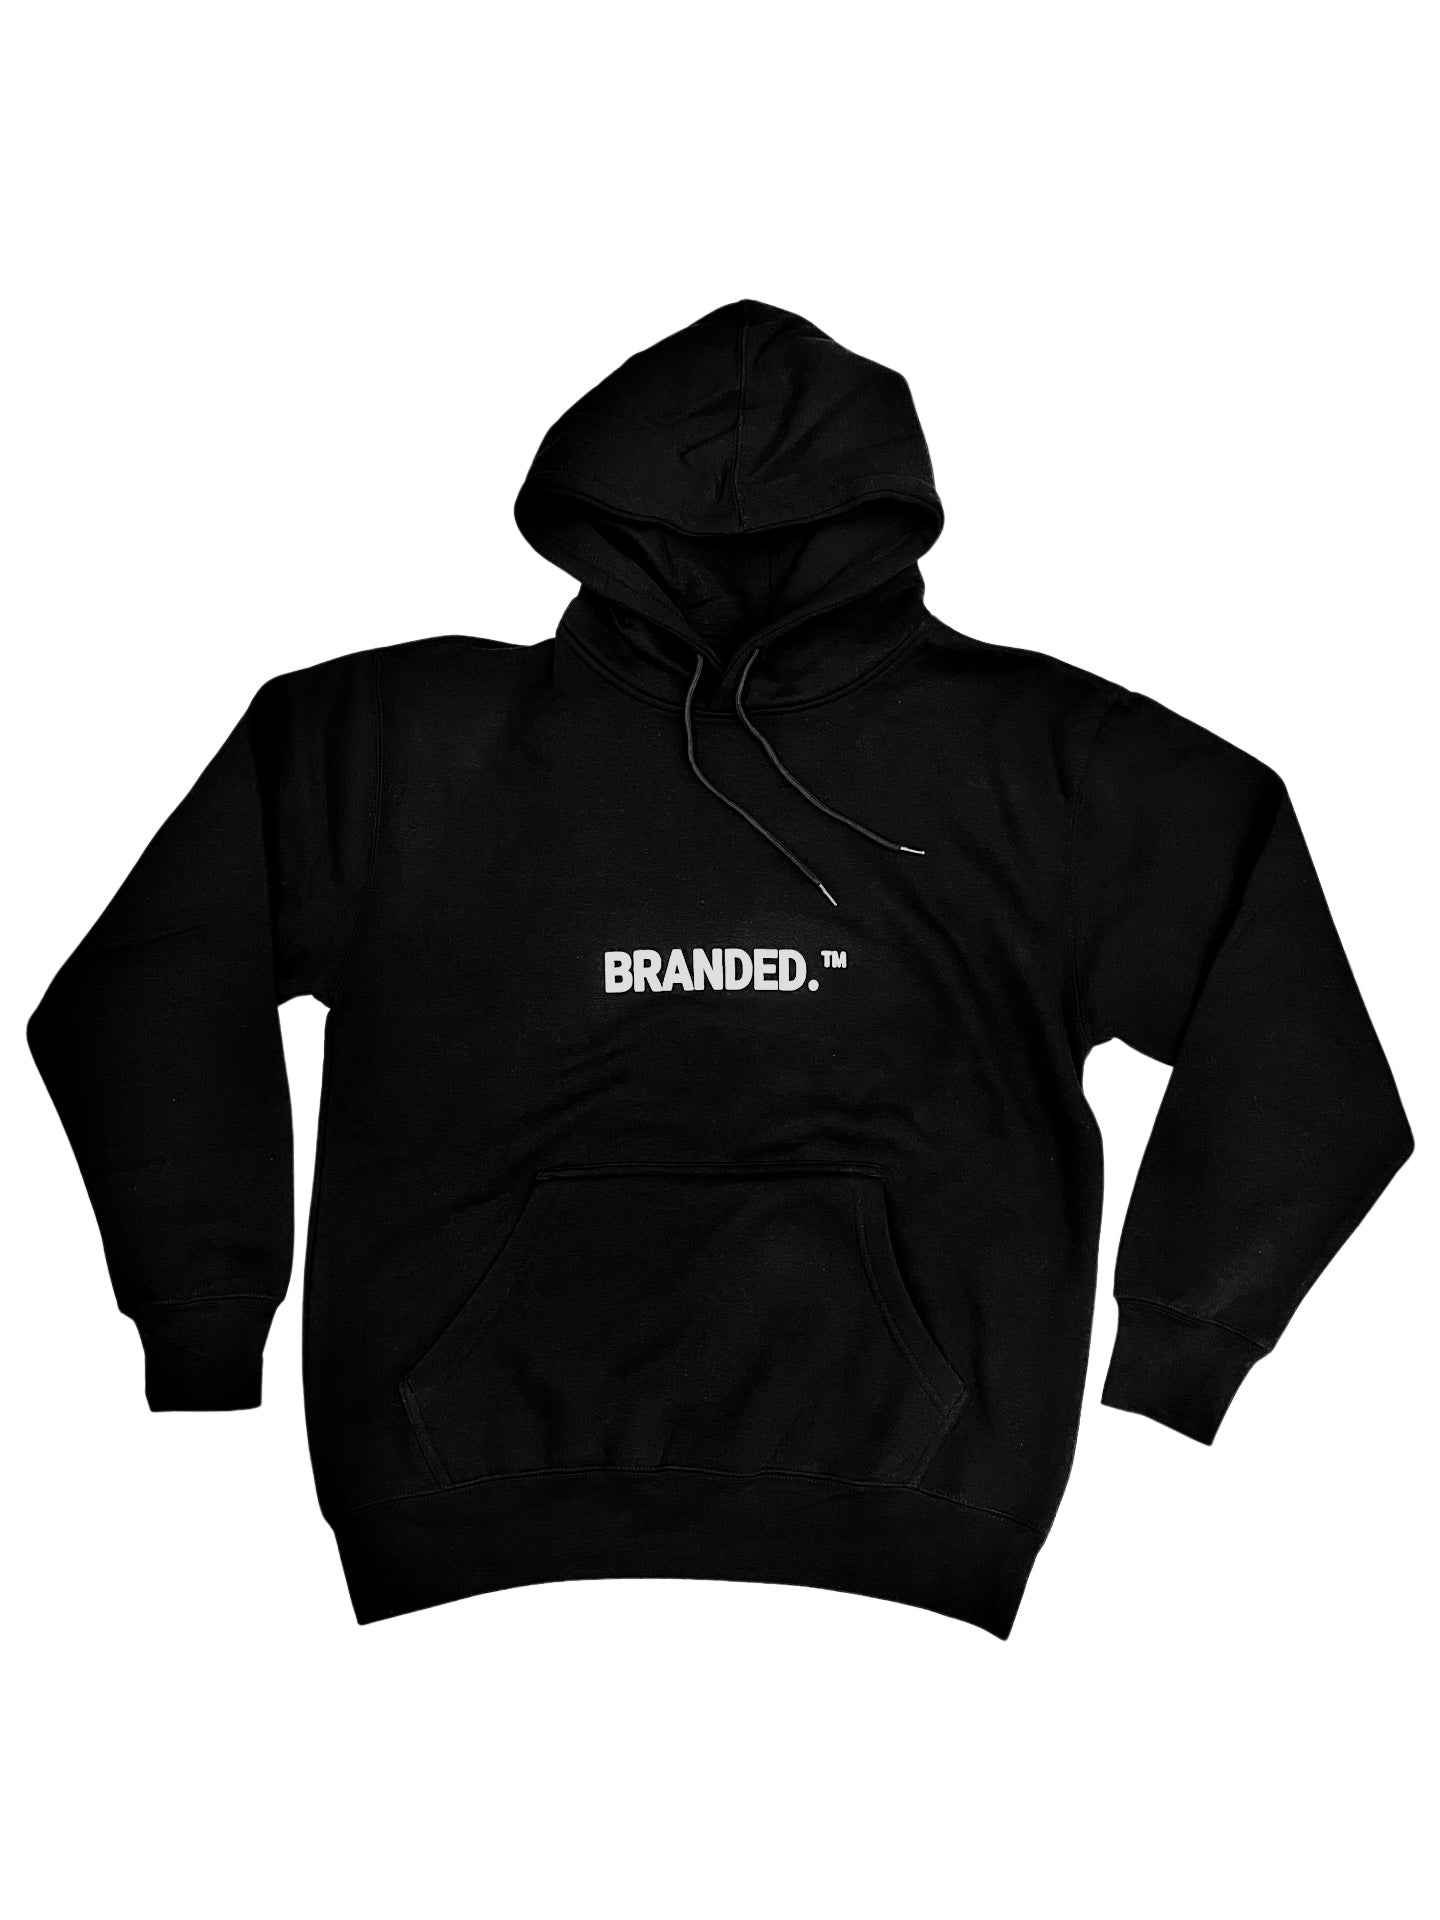 Branded. ™ Set Black